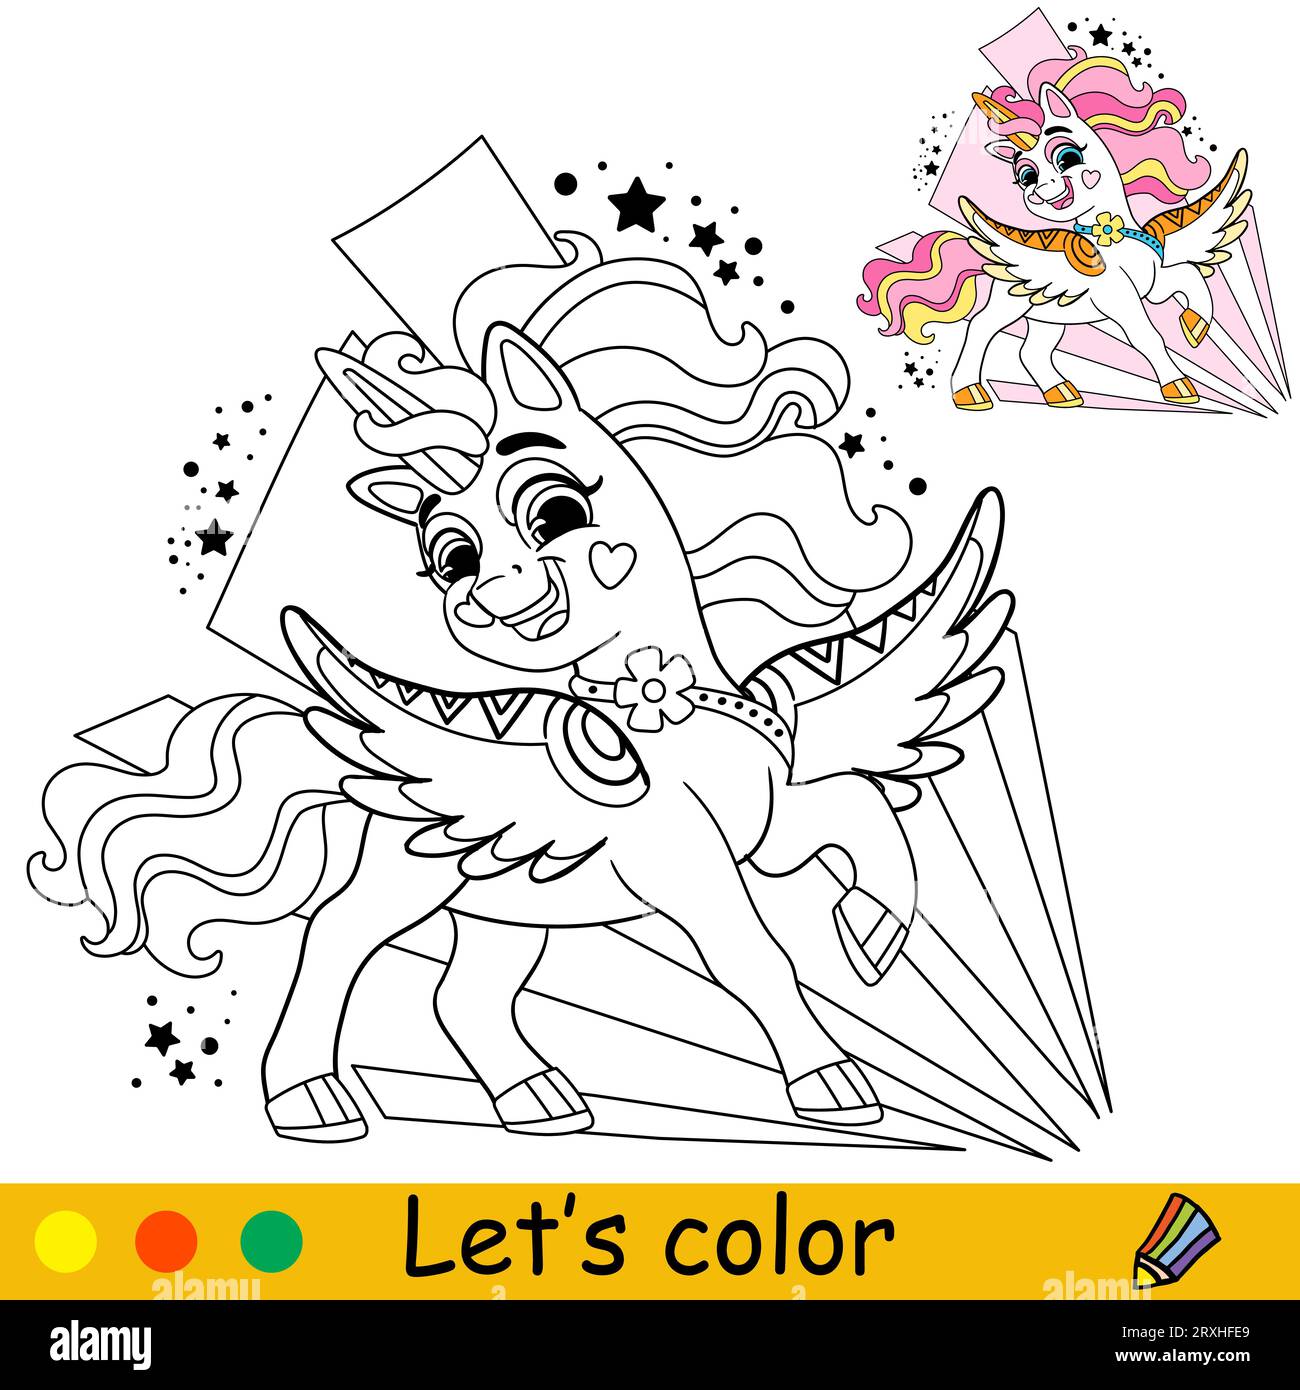 Cartoni animati, allegro unicorno con sfondo astratto. Pagina di libri da colorare per bambini. Unicorn. Illustrazione vettoriale isolata in bianco e nero con co Illustrazione Vettoriale